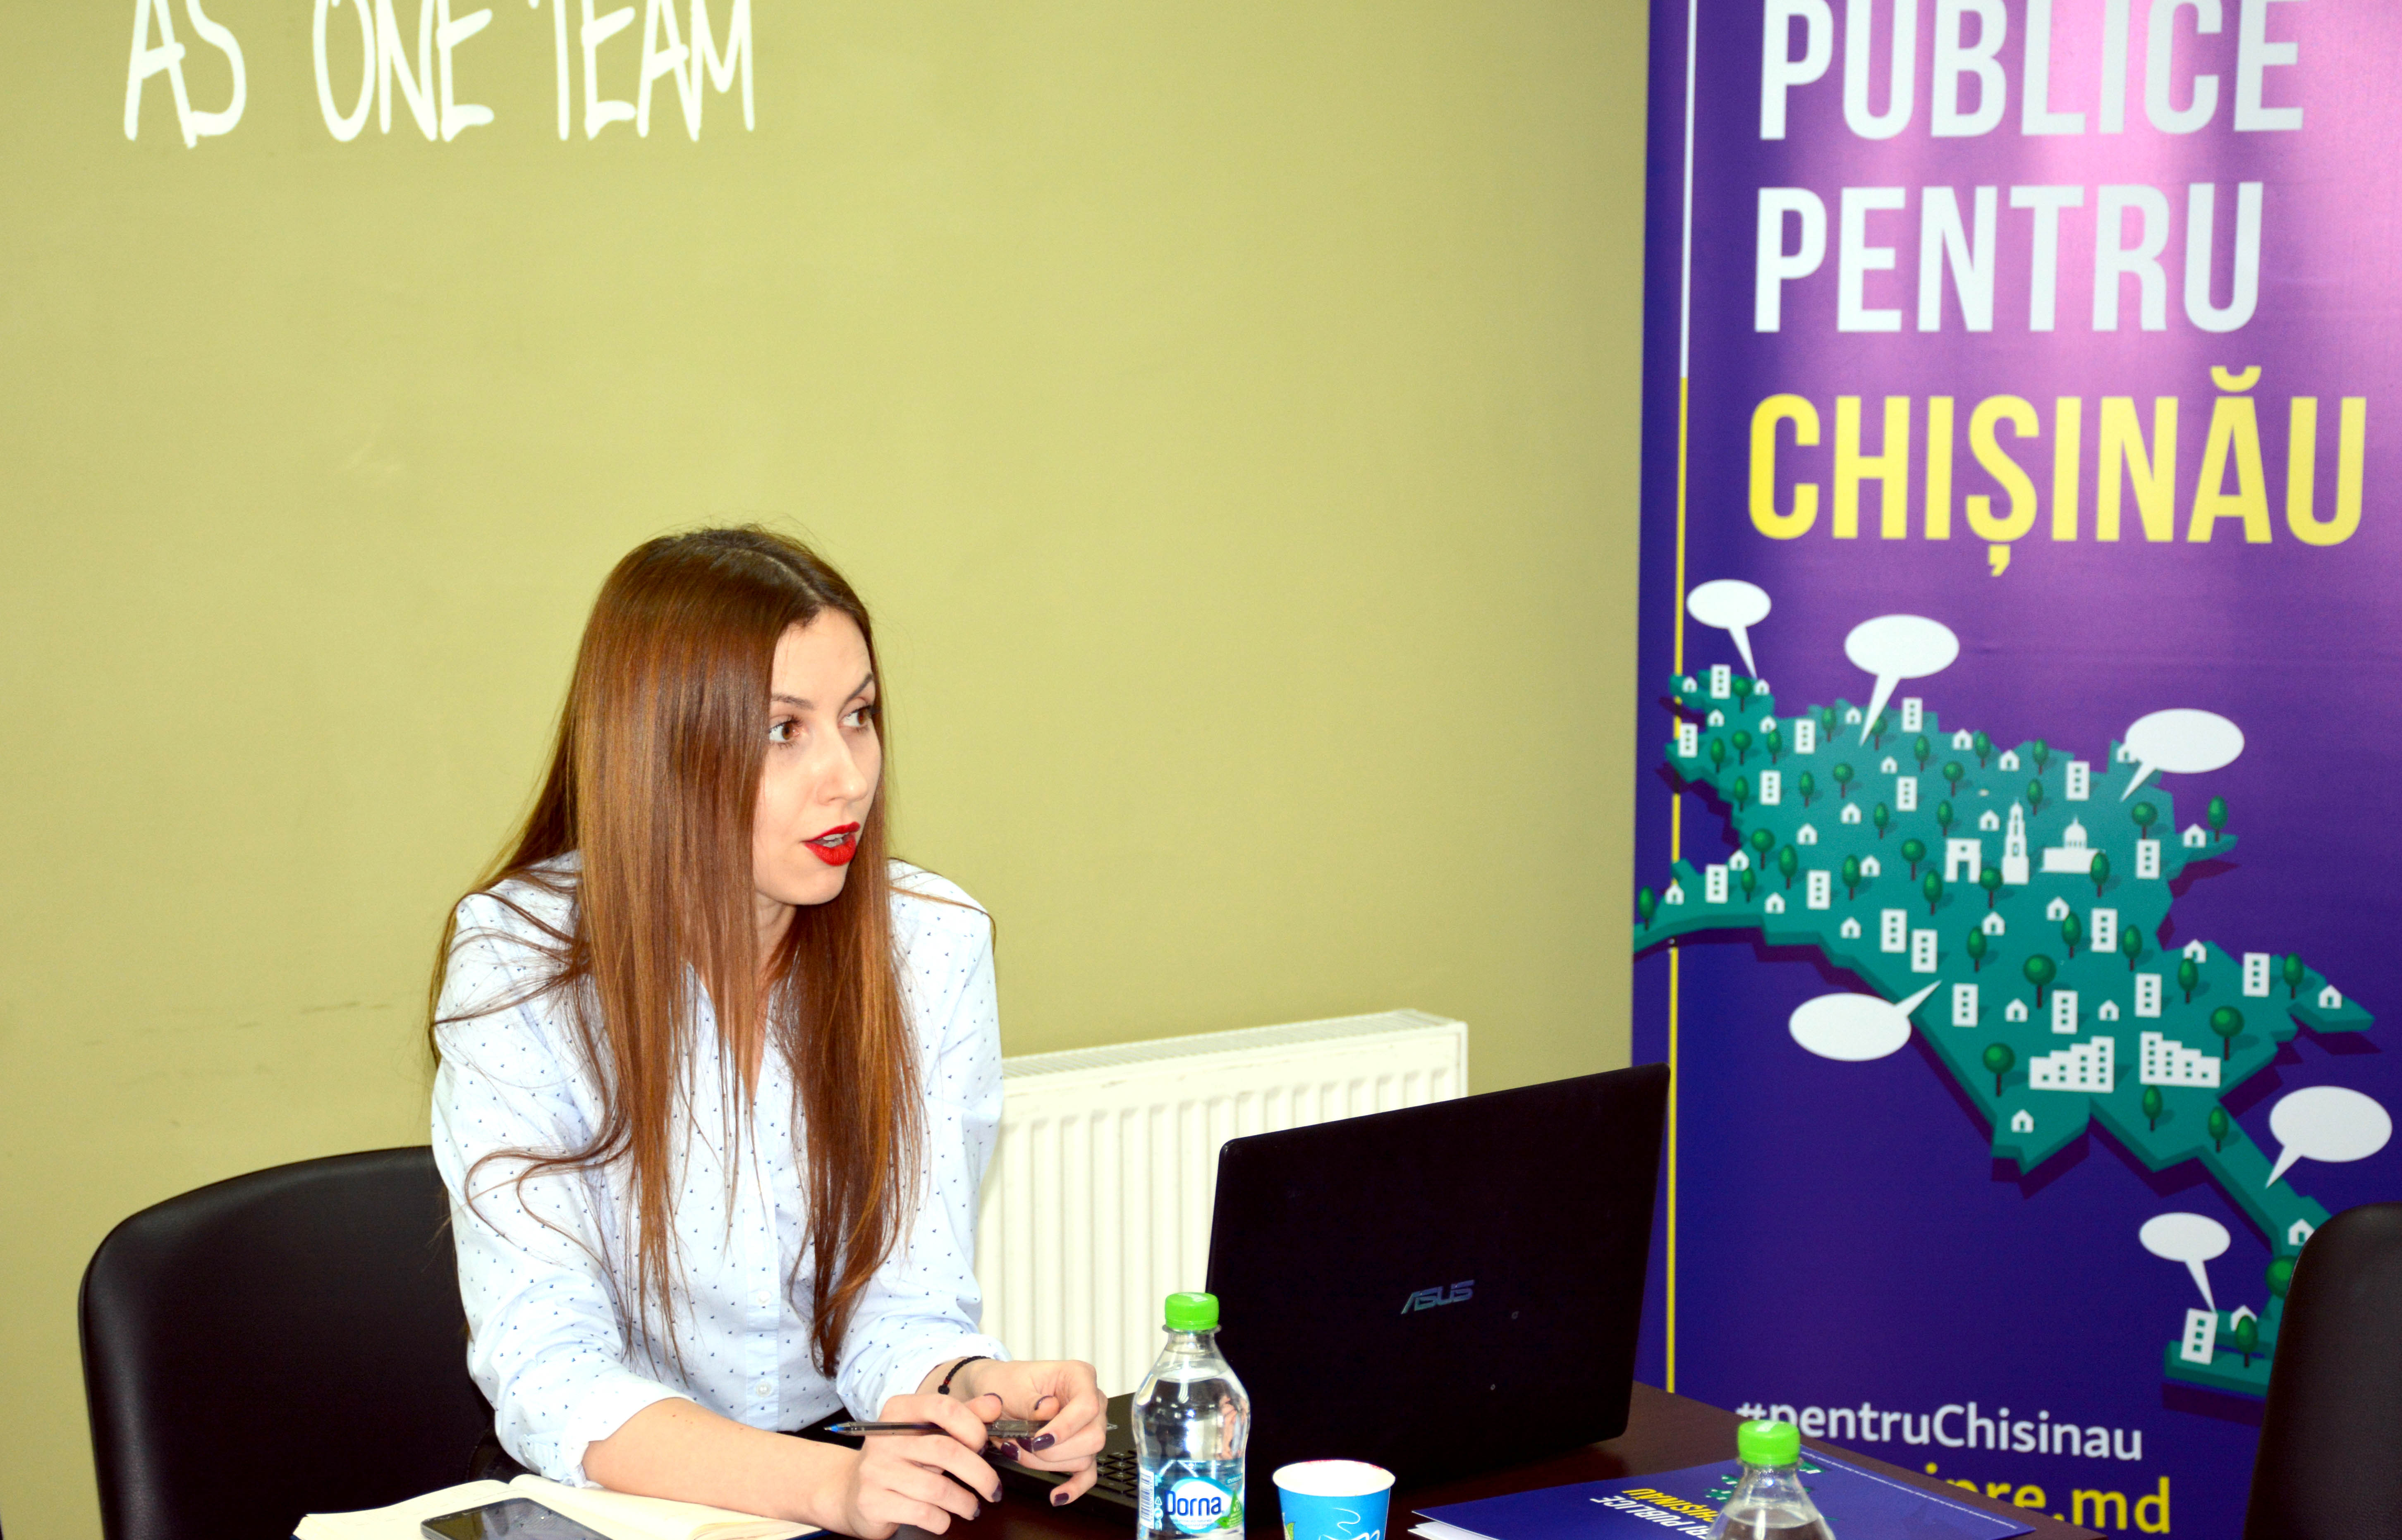 În următorii doi ani, IPRE va realiza încă 12 propuneri de politici publice pentru cetățenii municipiului Chișinău Image